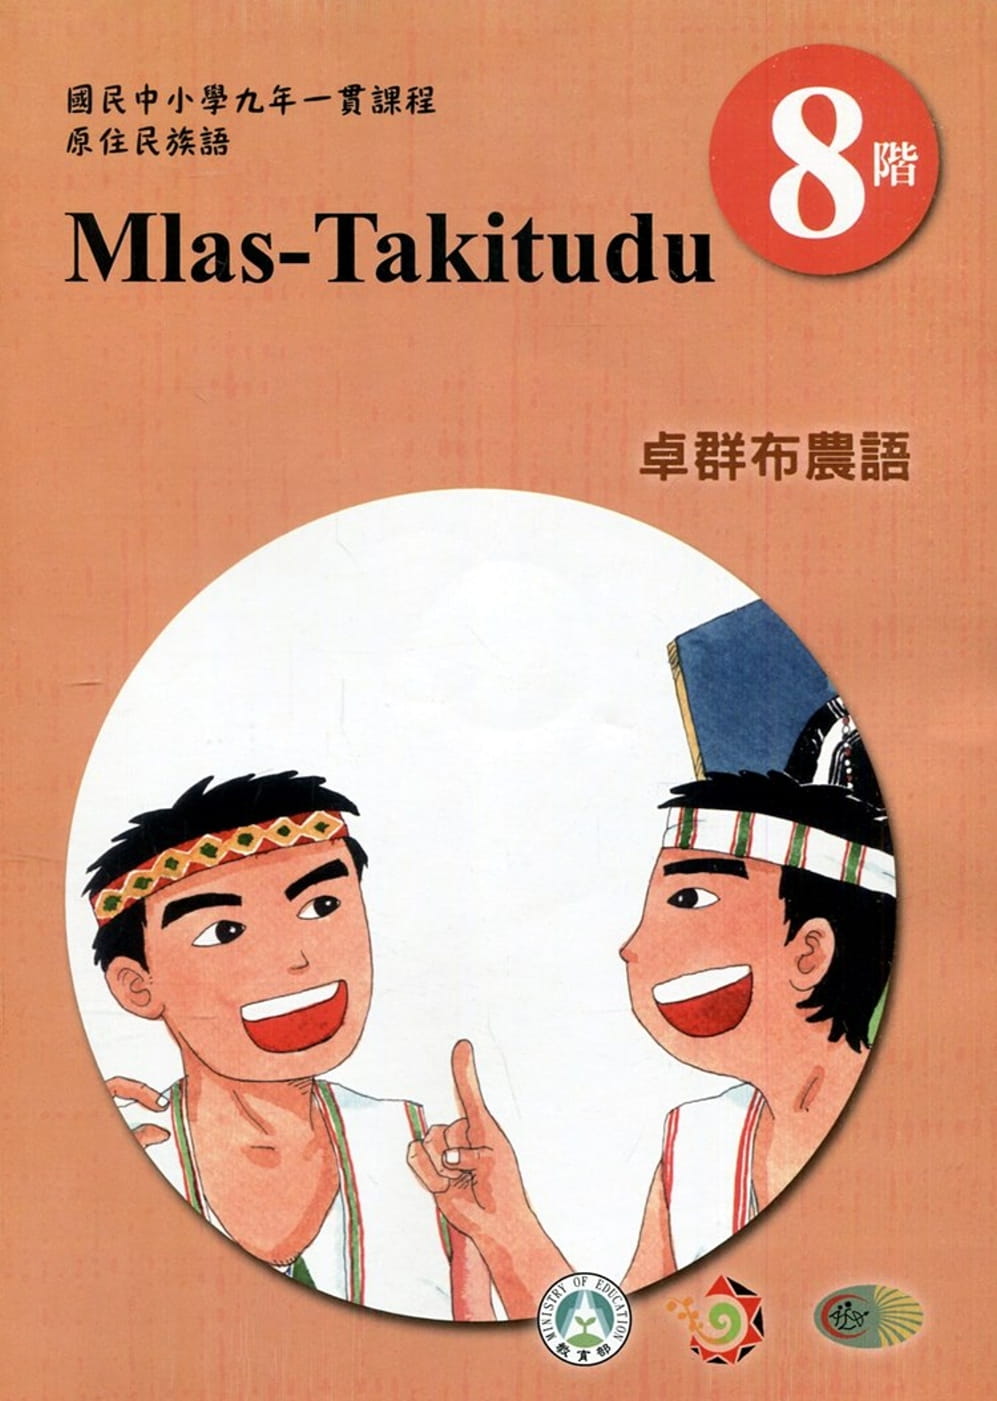 原住民族語卓群布農語第八階學習手冊(附光碟)2版